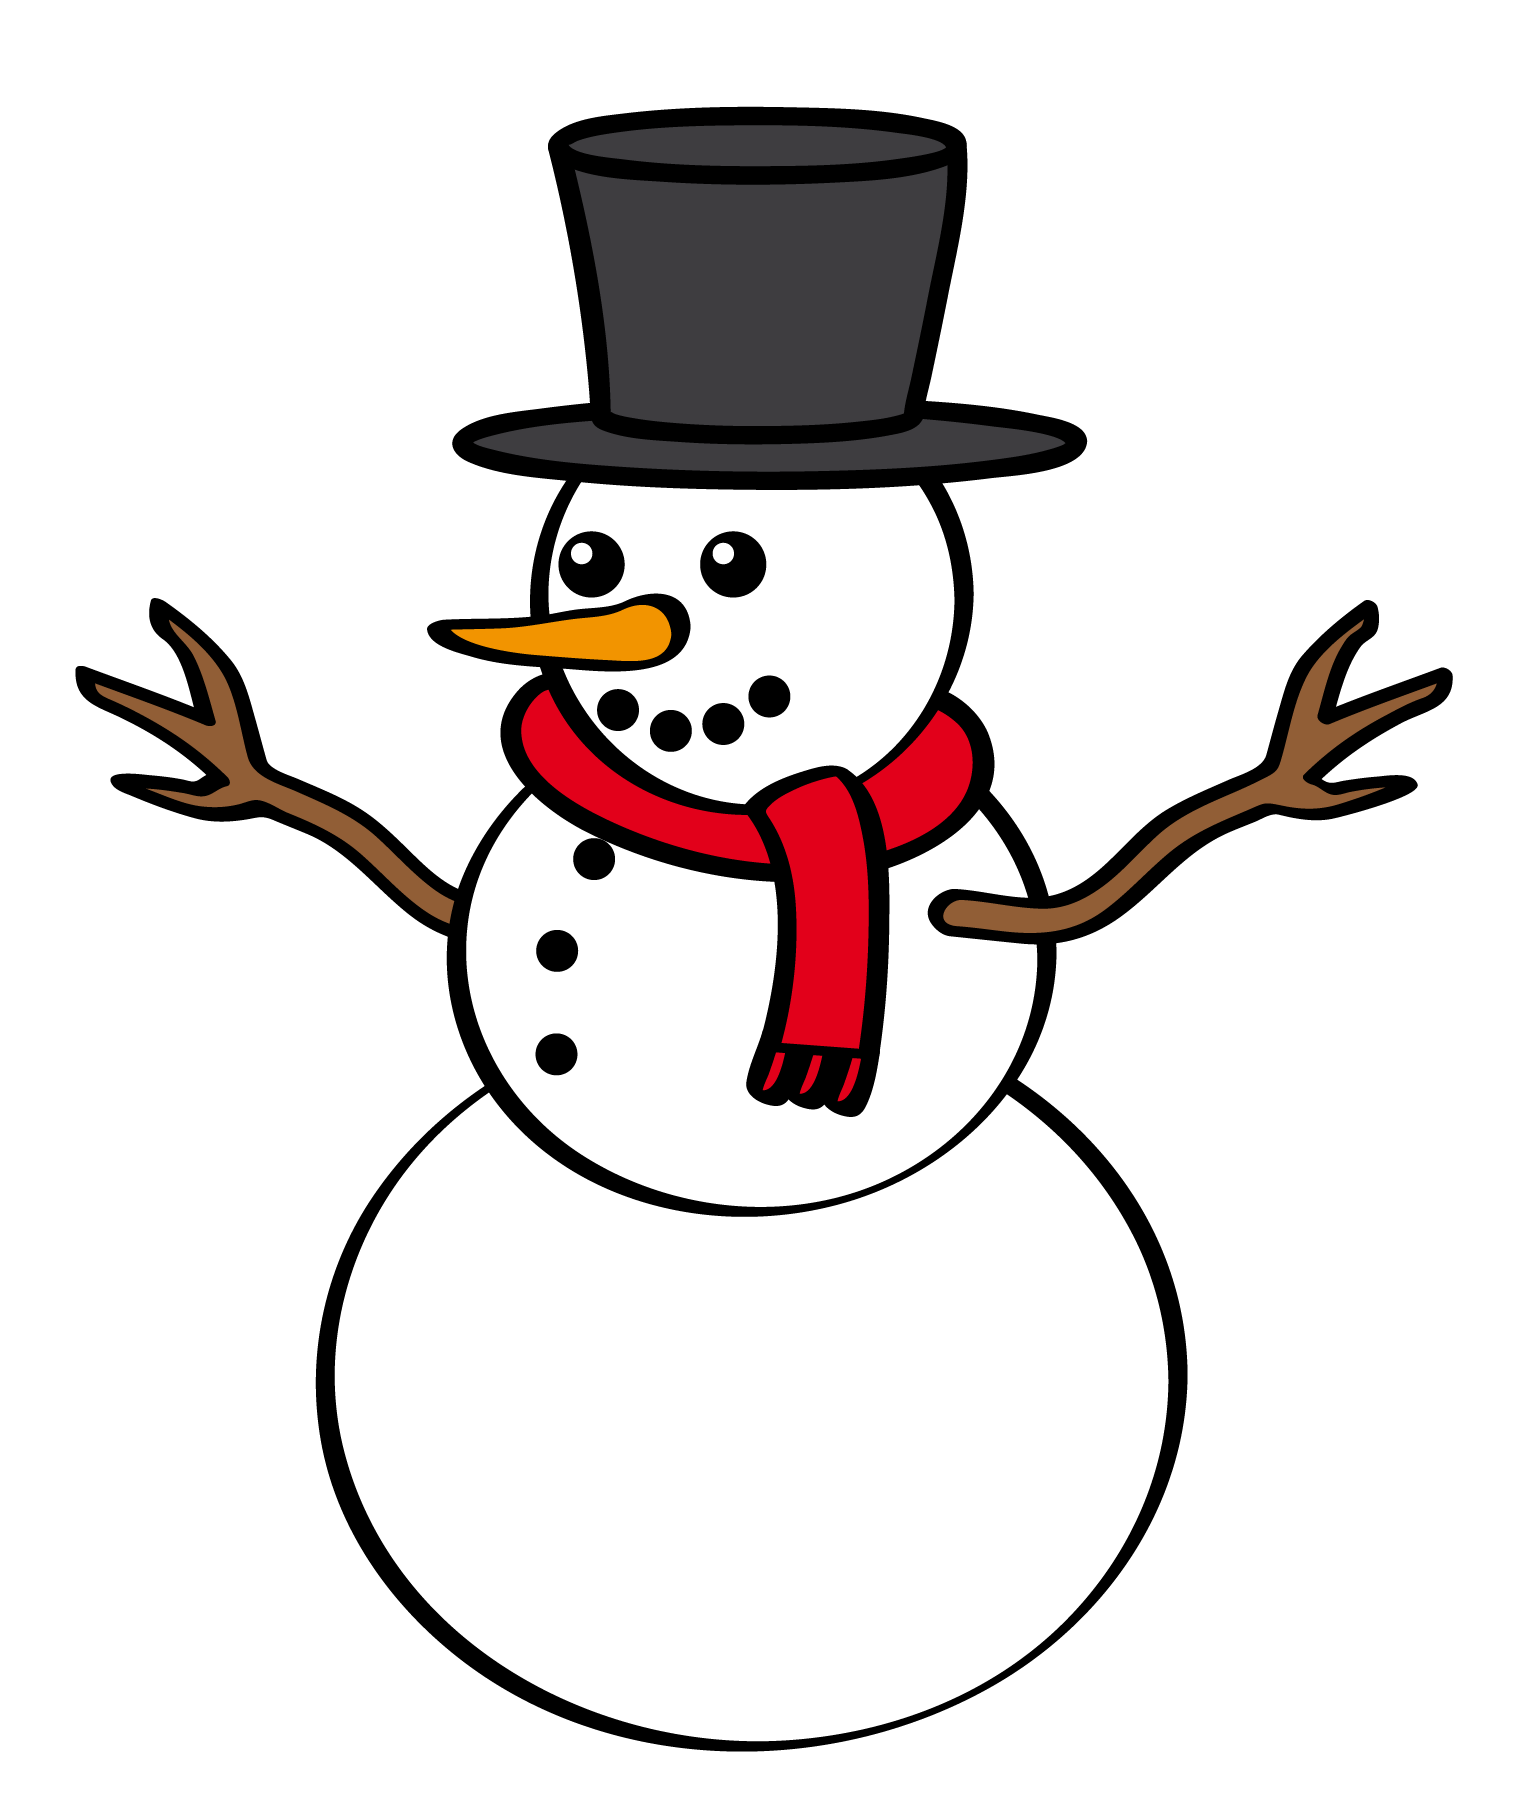 Free Snowman Clip Art - Snowman Images Clip Art